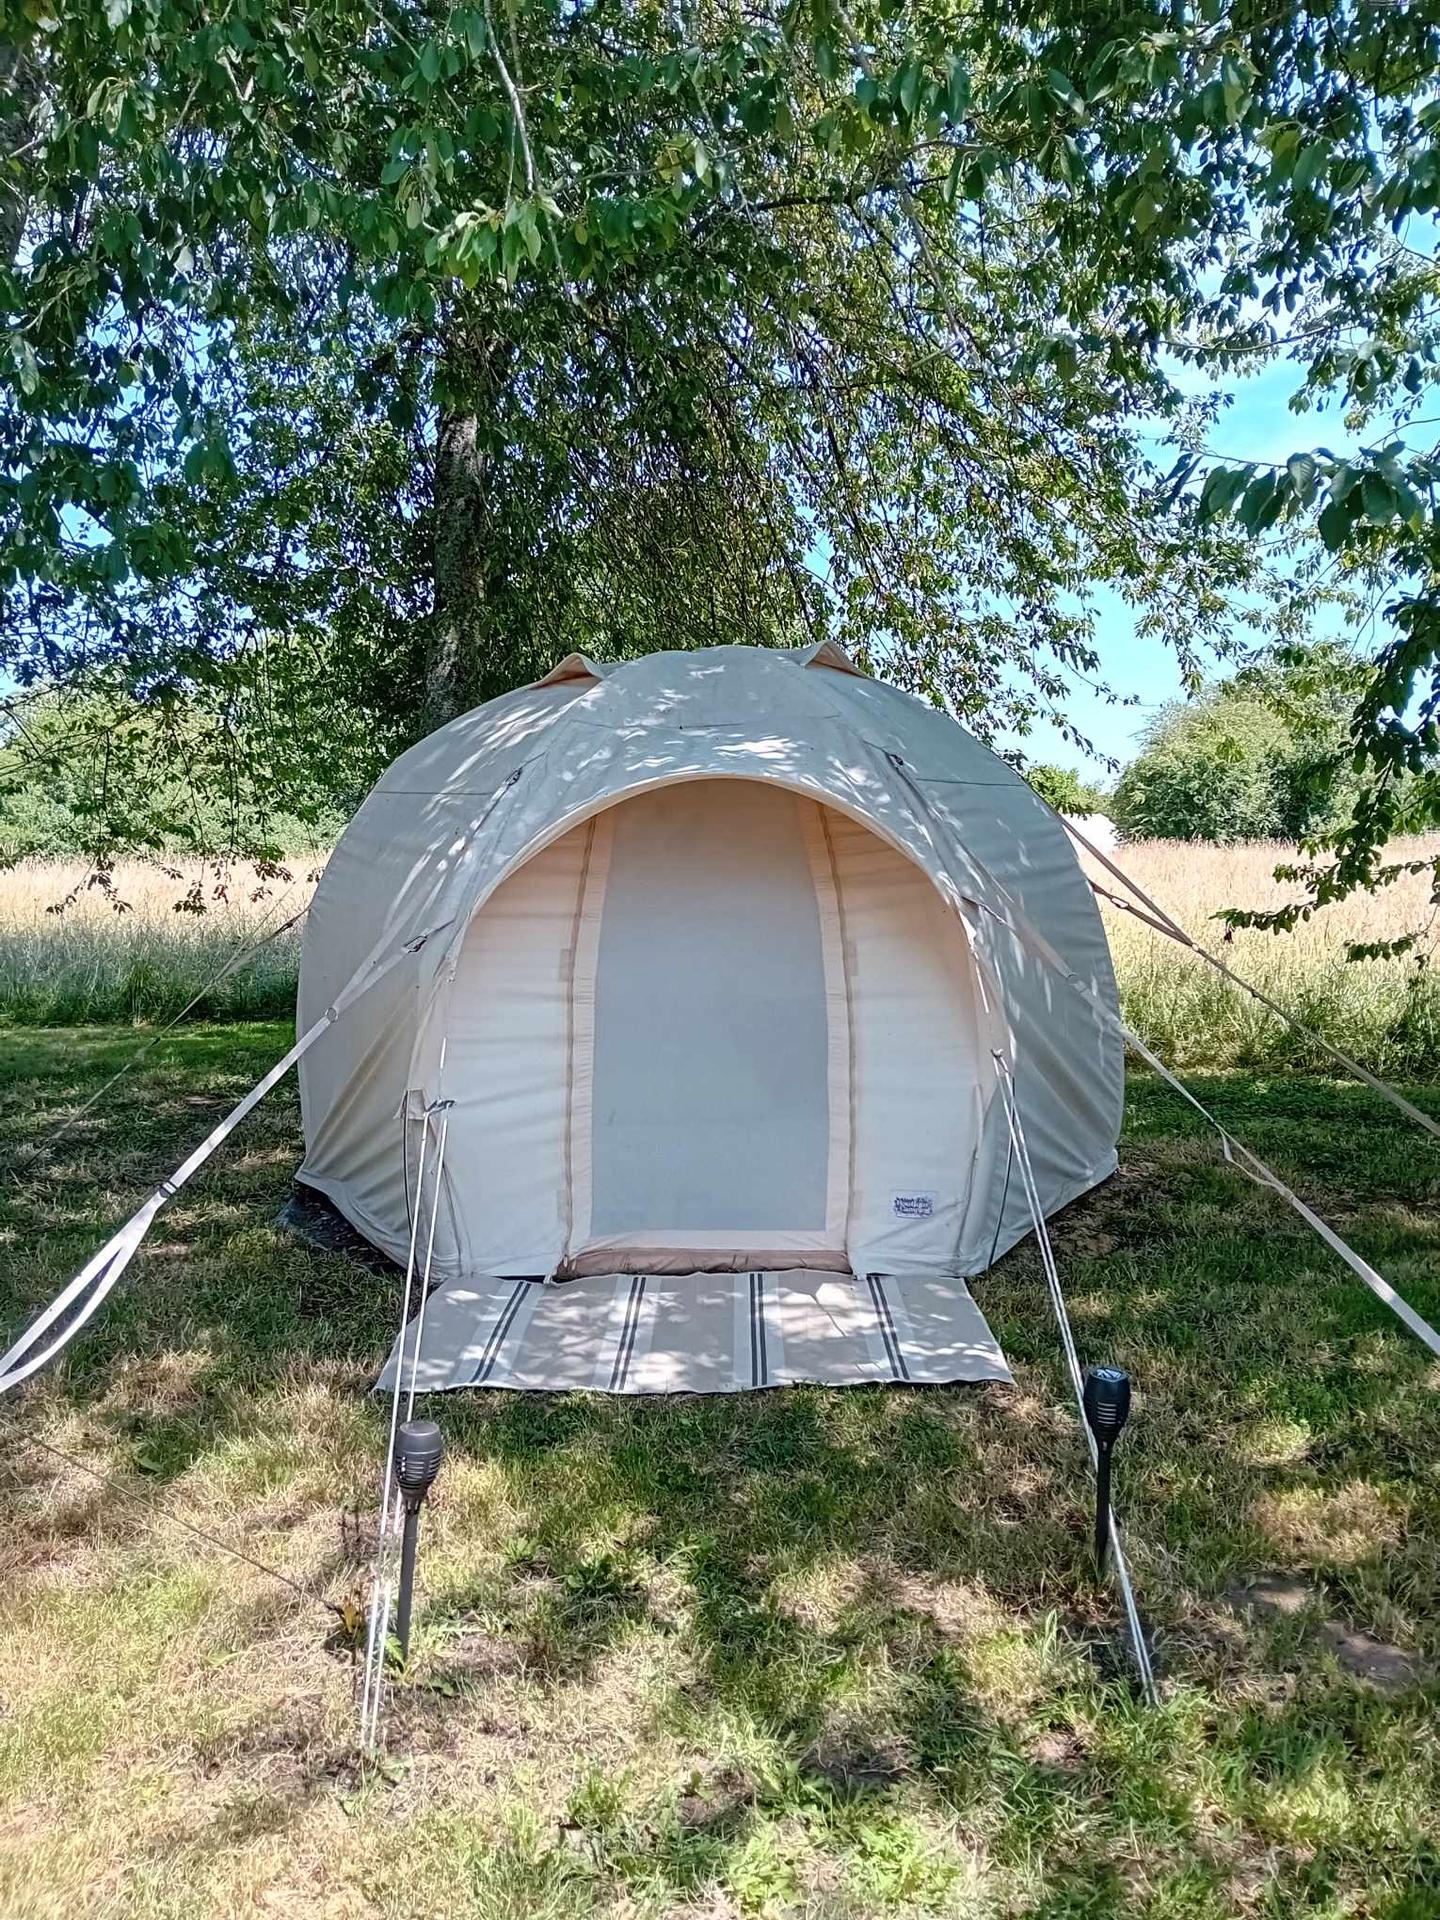 Logement GreenGo: Bus soleil avec une tente dans les arbres et une tente cocoon - Image 8